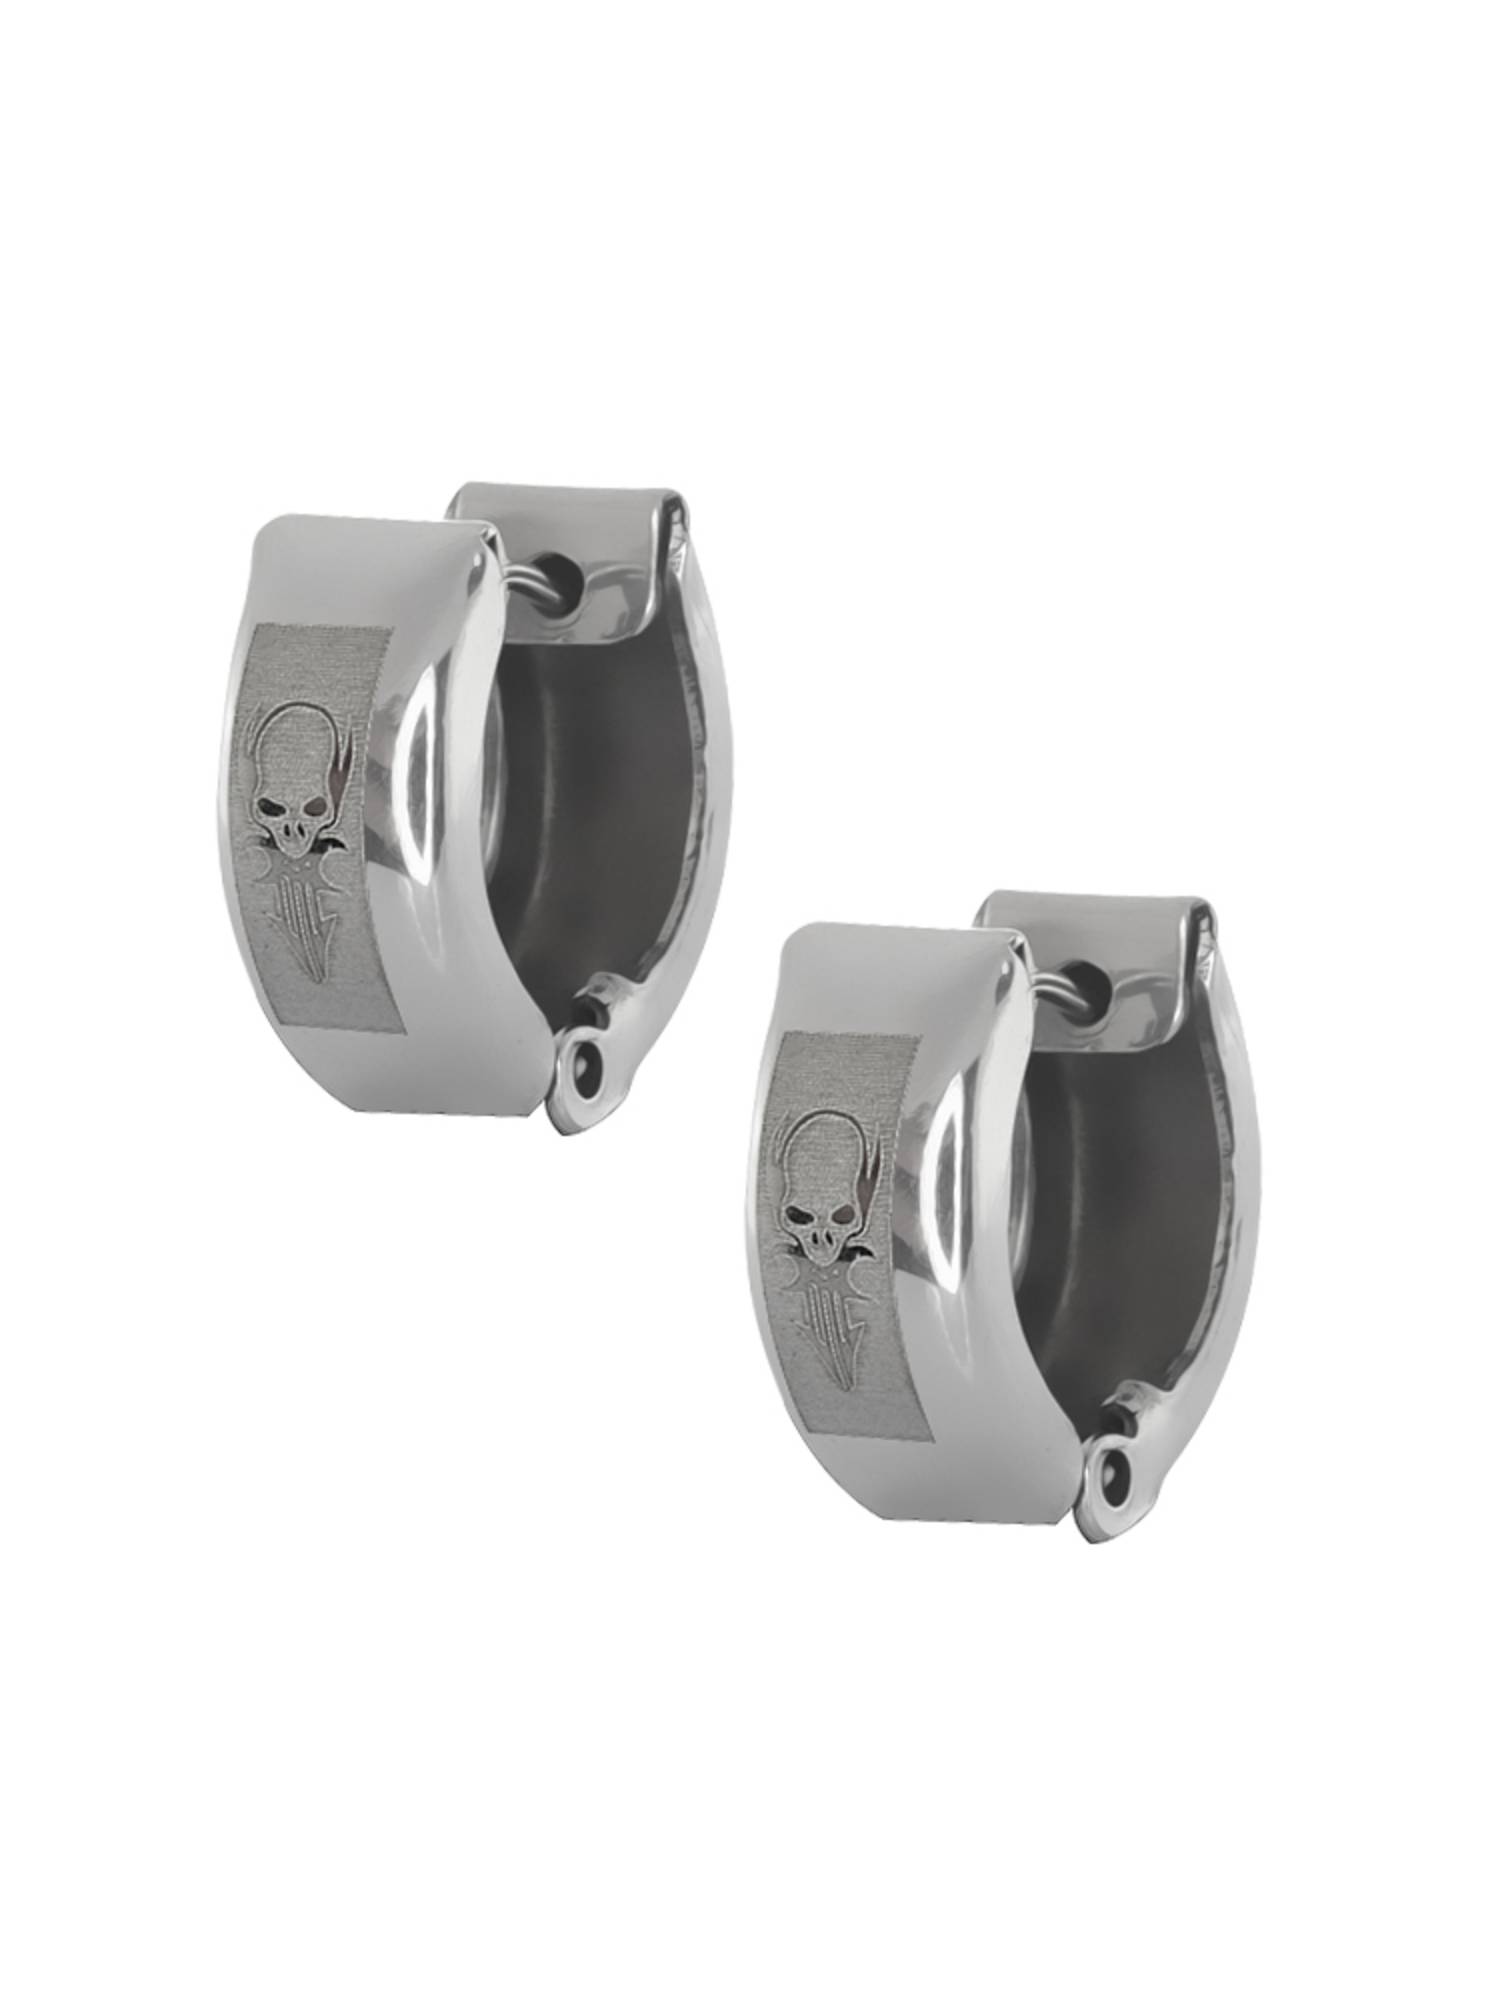 Stainless Steel High Shine Matte Huggie Hoop Earrings 13mm Length, 5mm Width - image 1 of 6